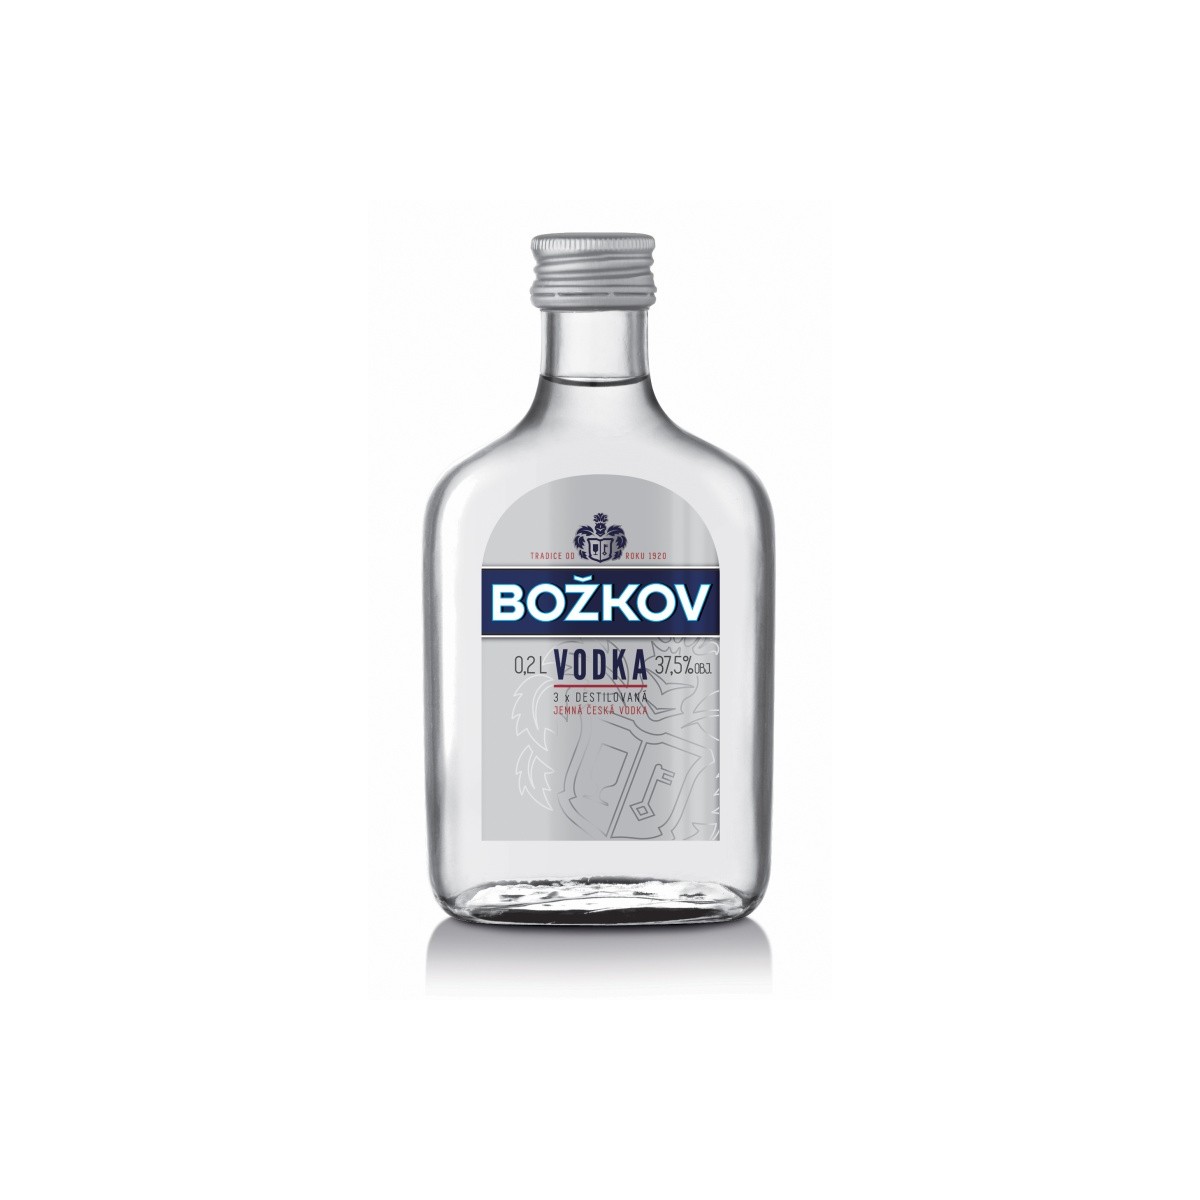 Vodka Božkov 0,2l